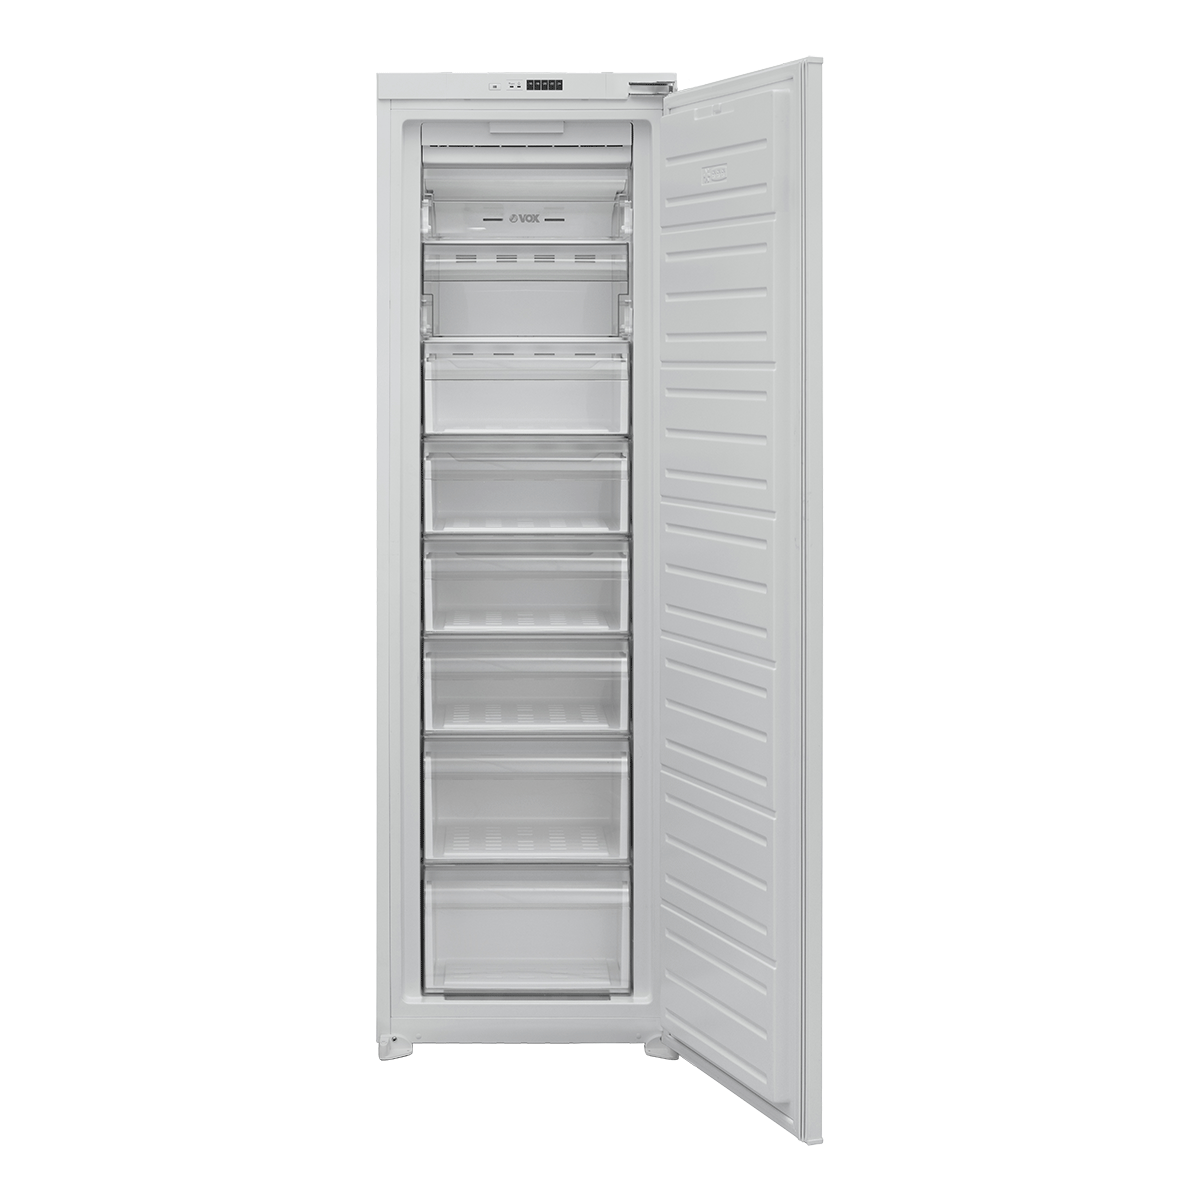 Built-in freezer IVF 2790 E 